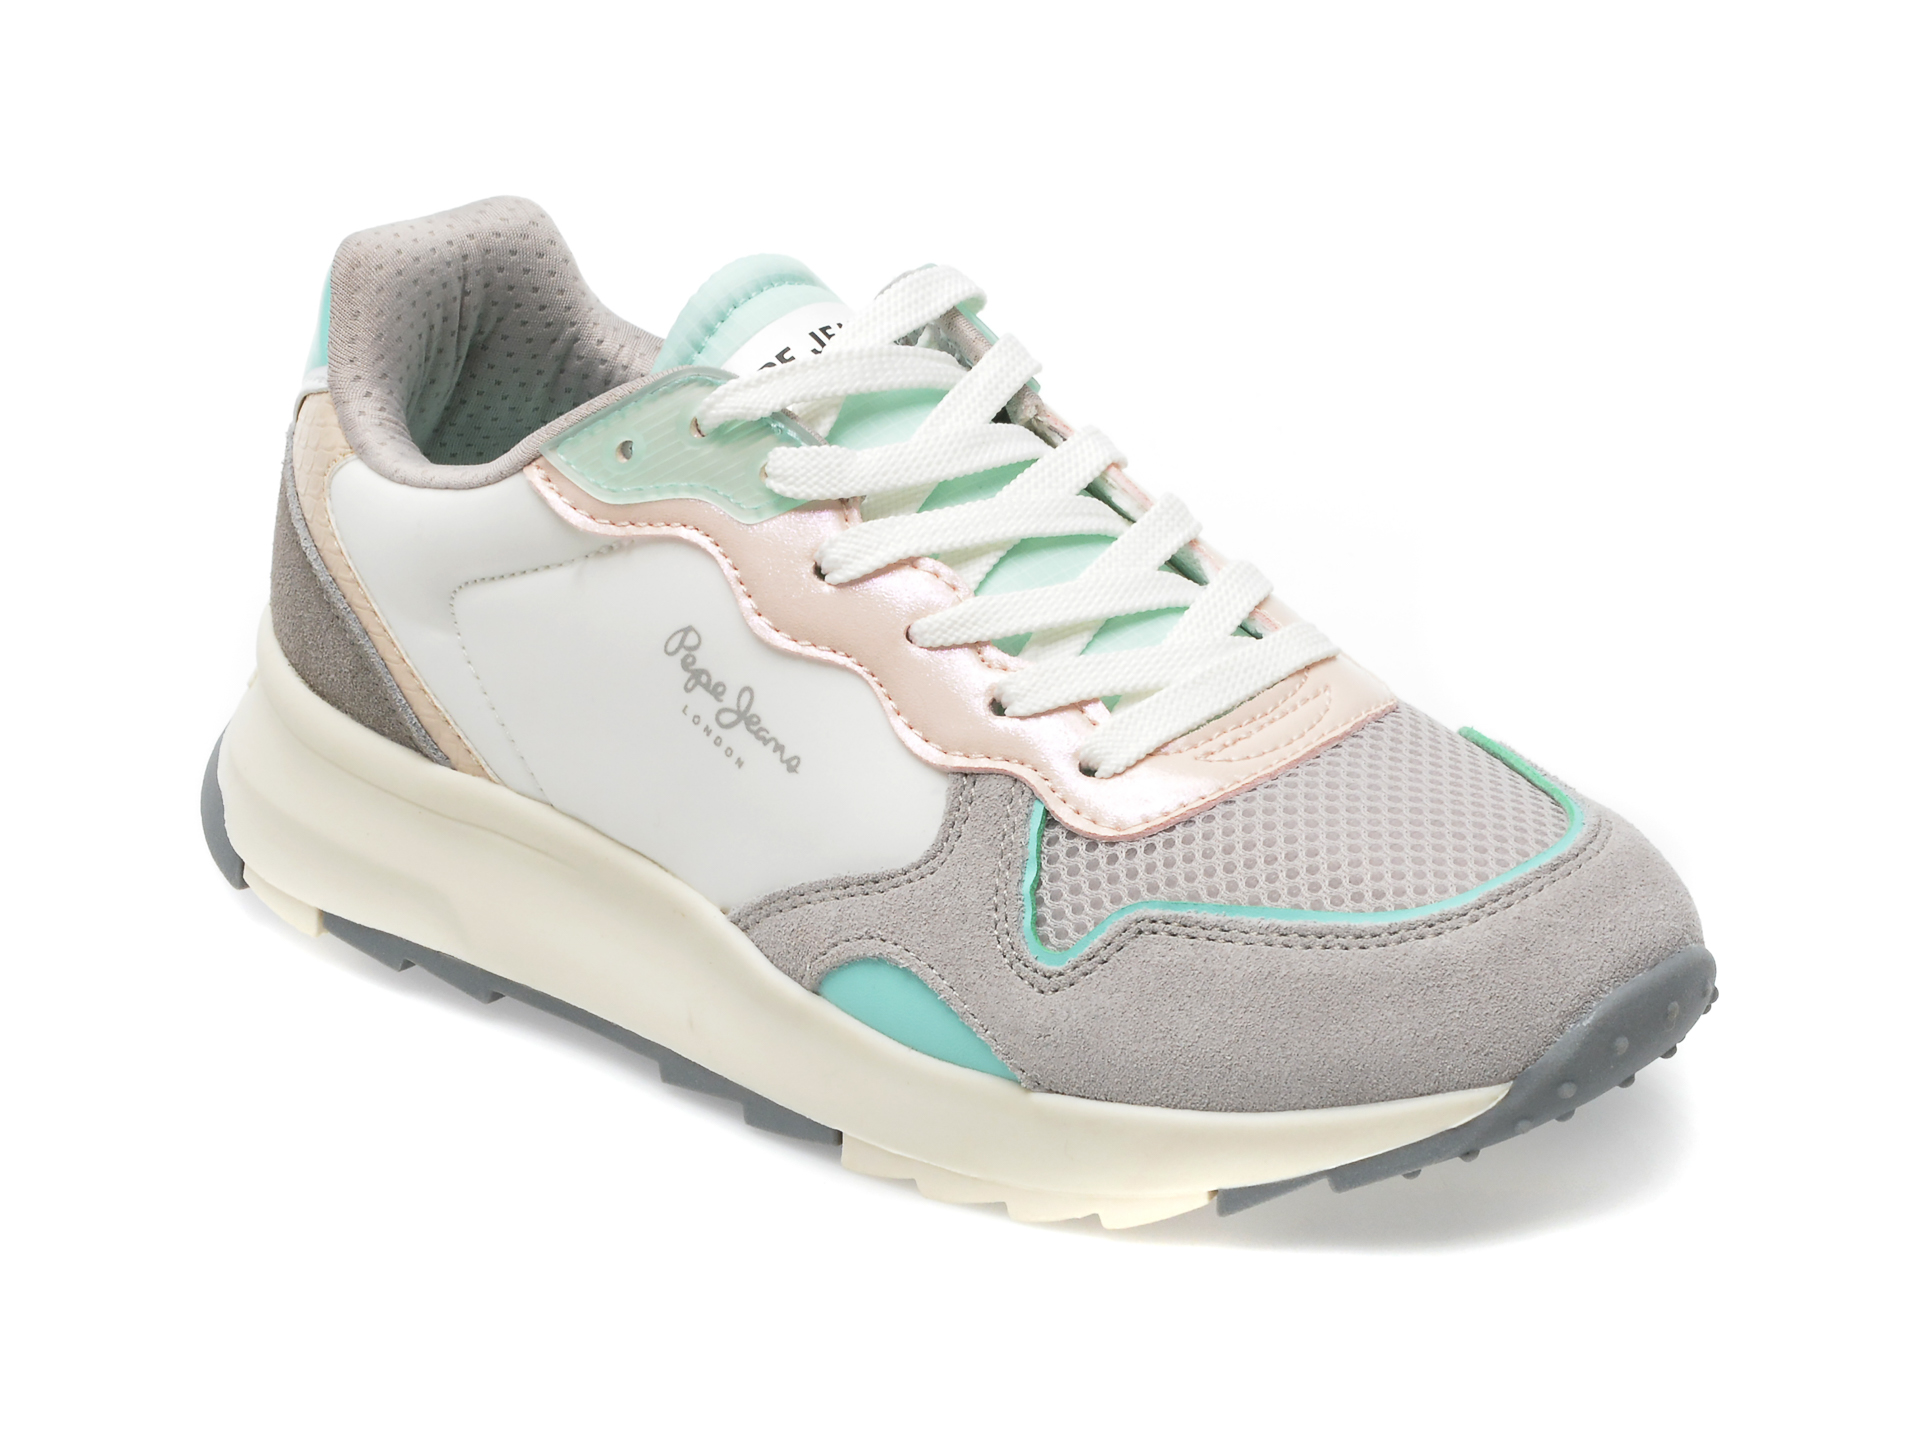 Pantofi sport PEPE JEANS multicolori, LS31452, din piele intoarsa si material textil /femei/pantofi